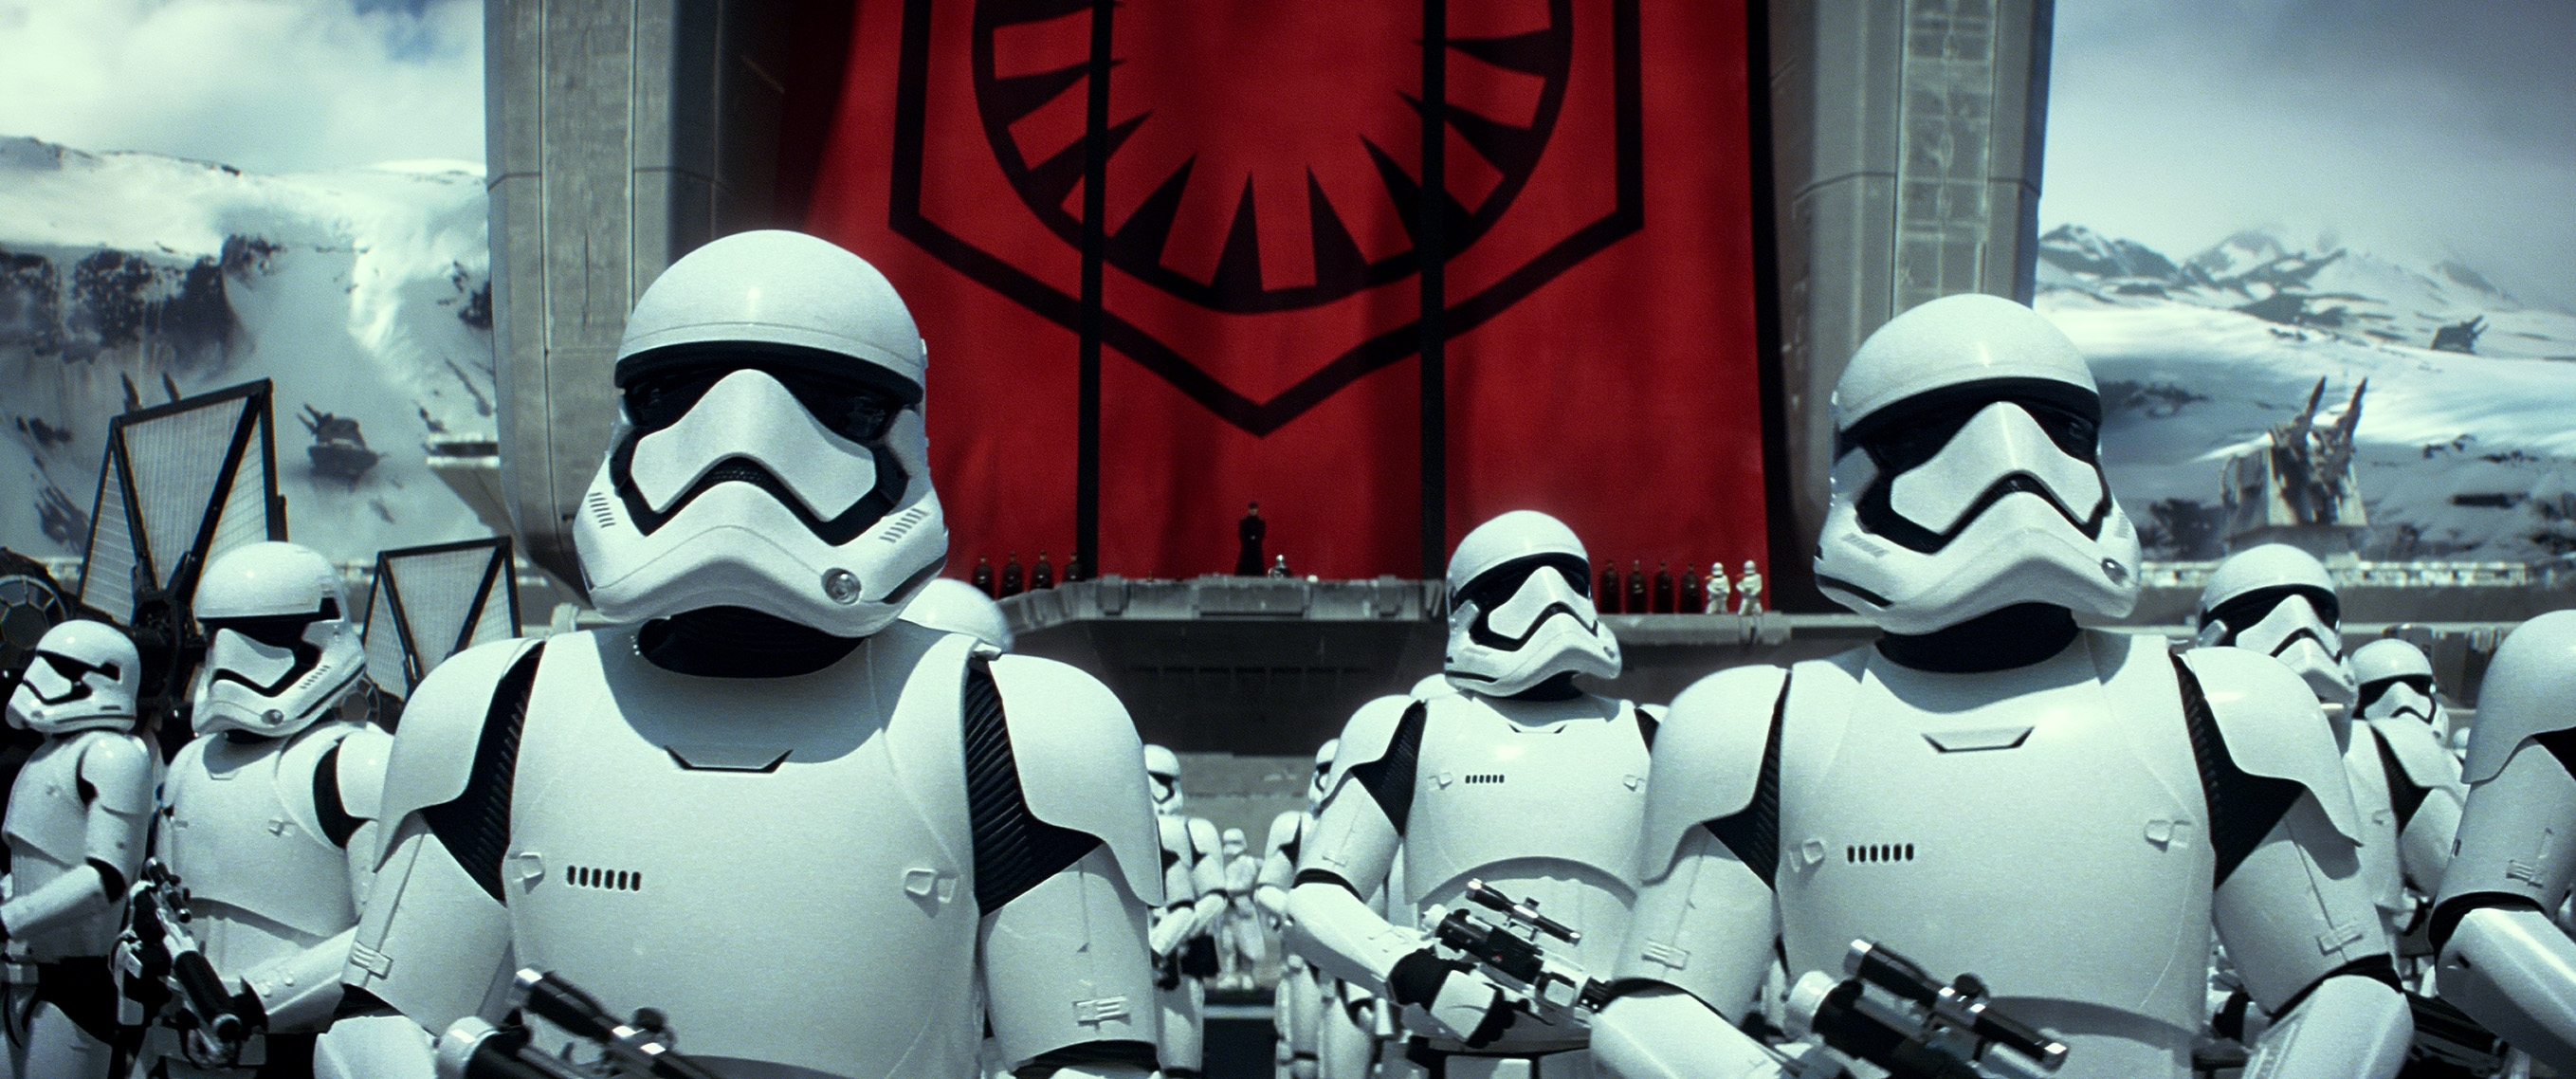 Image du film Star Wars Episode VII : le réveil de la force de82f1f9-2260-432a-92f3-cda61e030e68